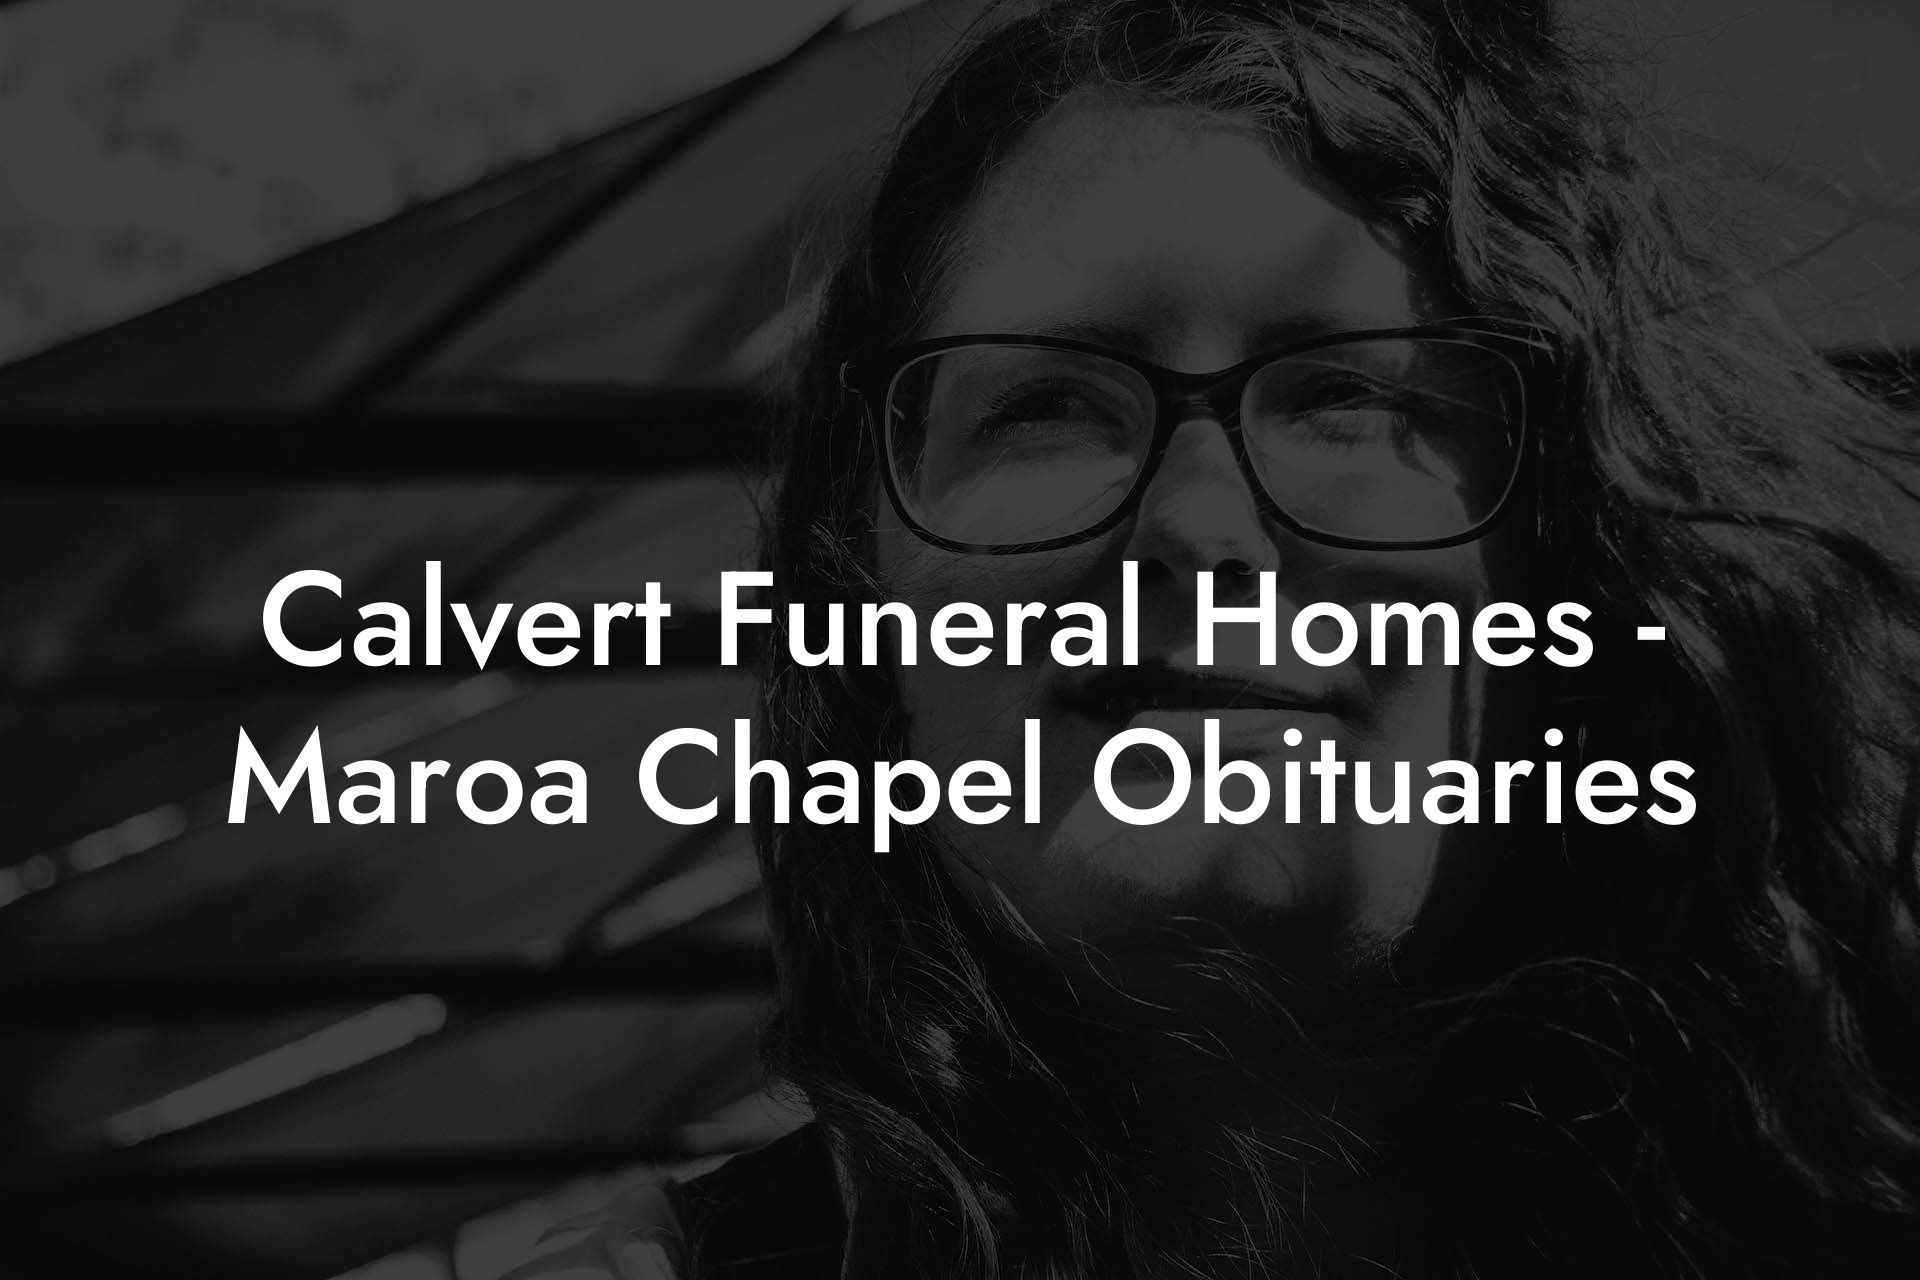 Calvert Funeral Homes - Maroa Chapel Obituaries